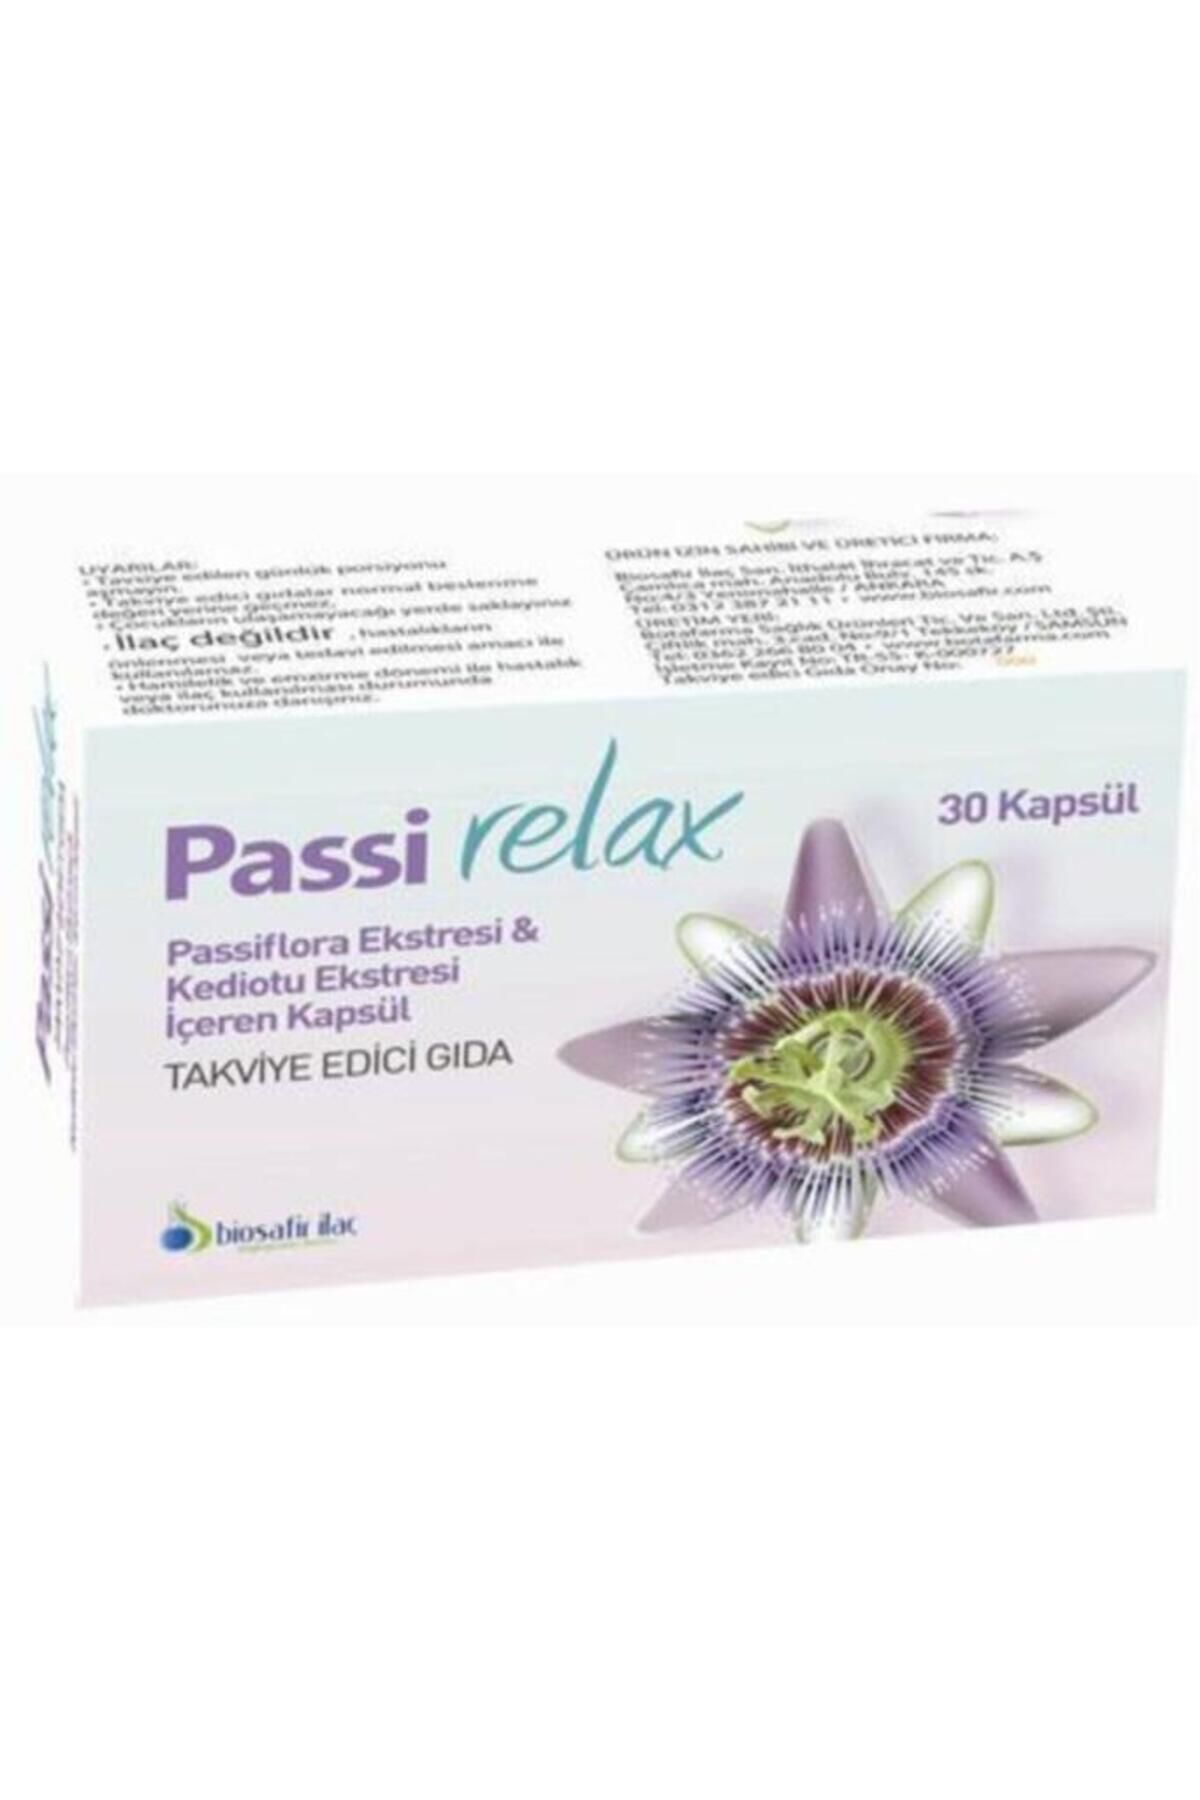 Passirelax Passi Relax Passiflora & Valerian Ekstresi 30 Kapsul